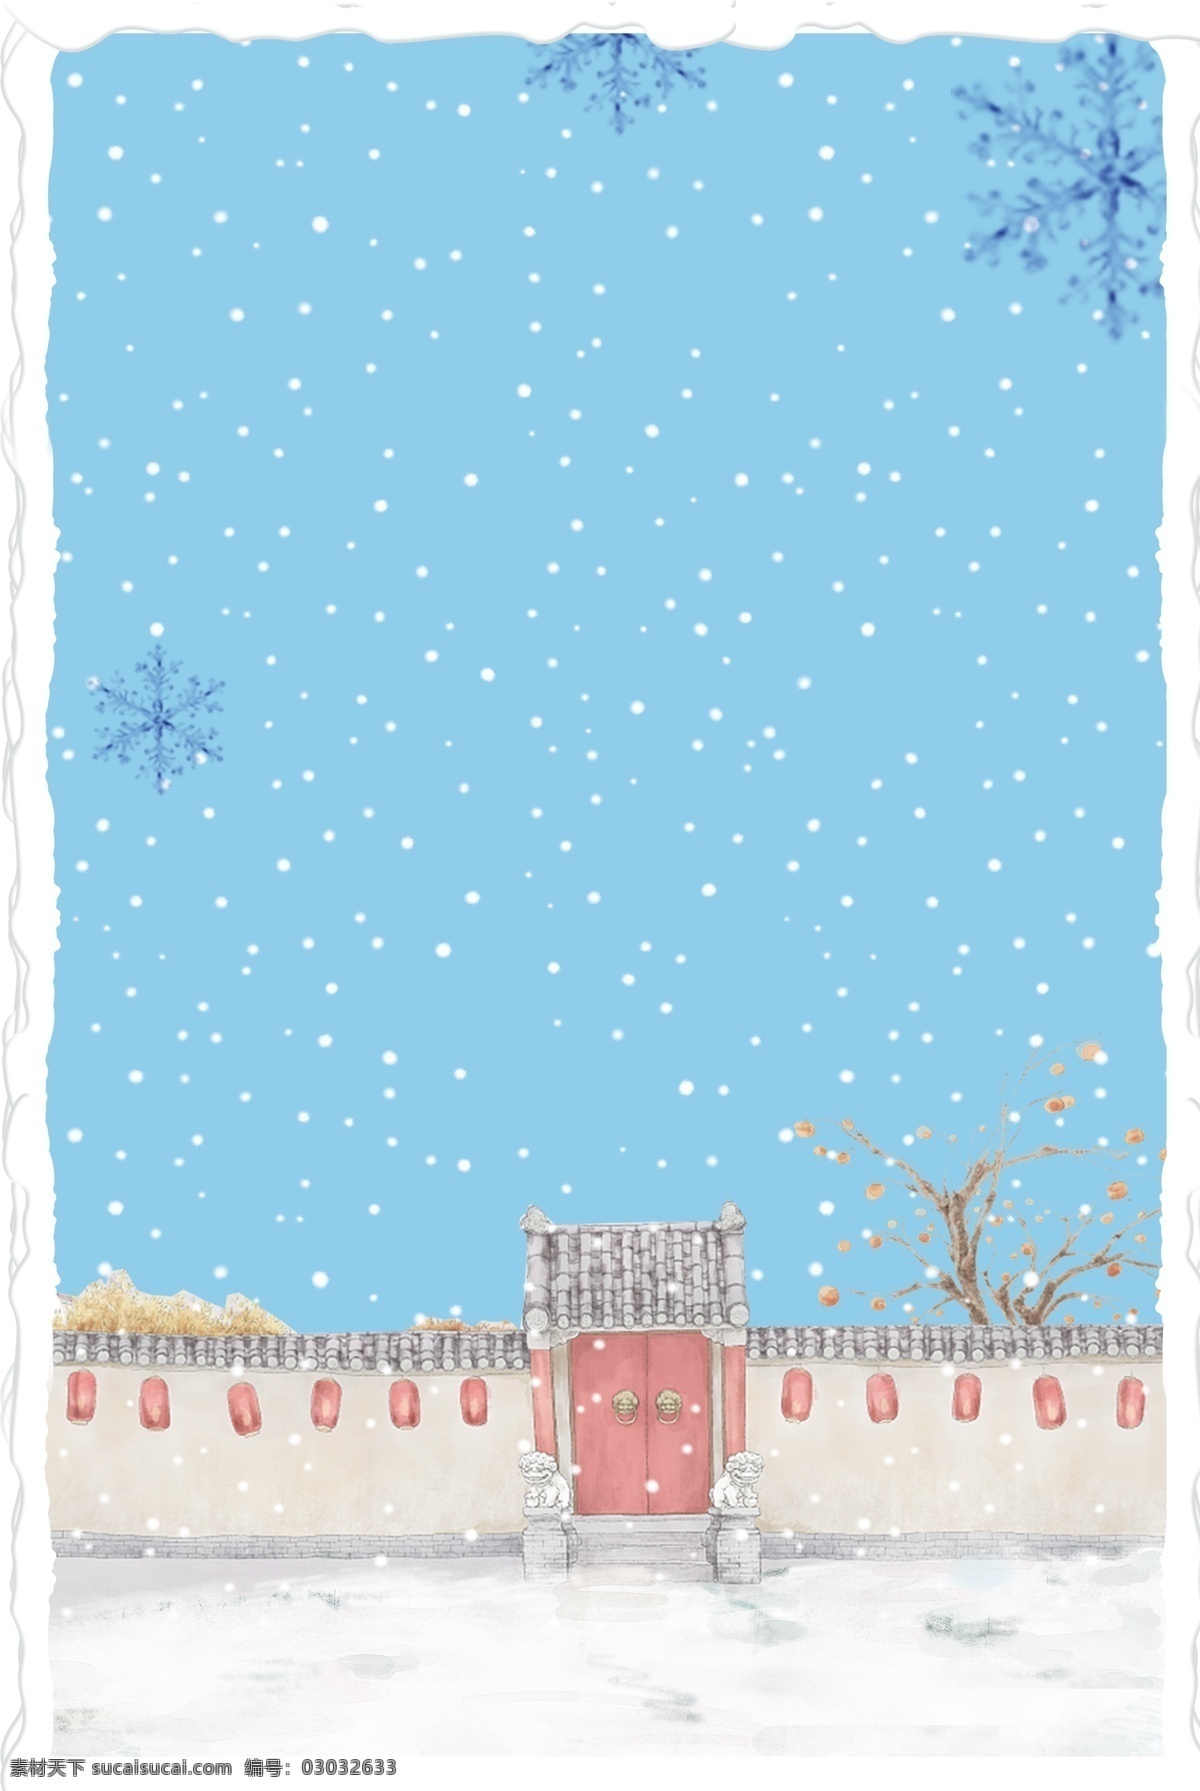 冬至 来临 蓝色 背景 图 院墙 朱门 梅花 雪花 雪地 简约 扁平 海报 寒冷